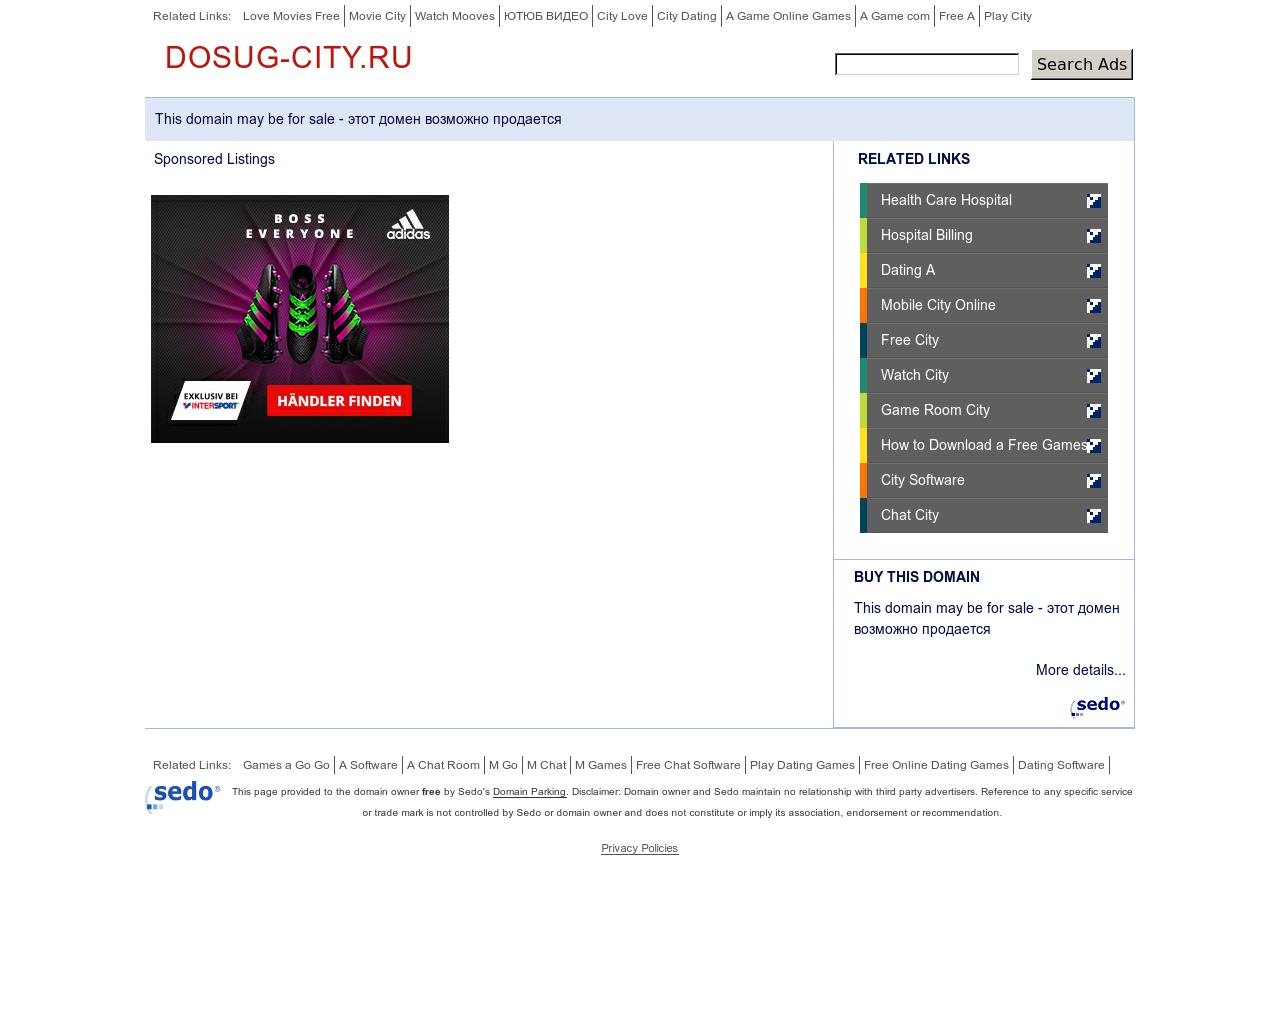 Изображение сайта dosug-city.ru в разрешении 1280x1024